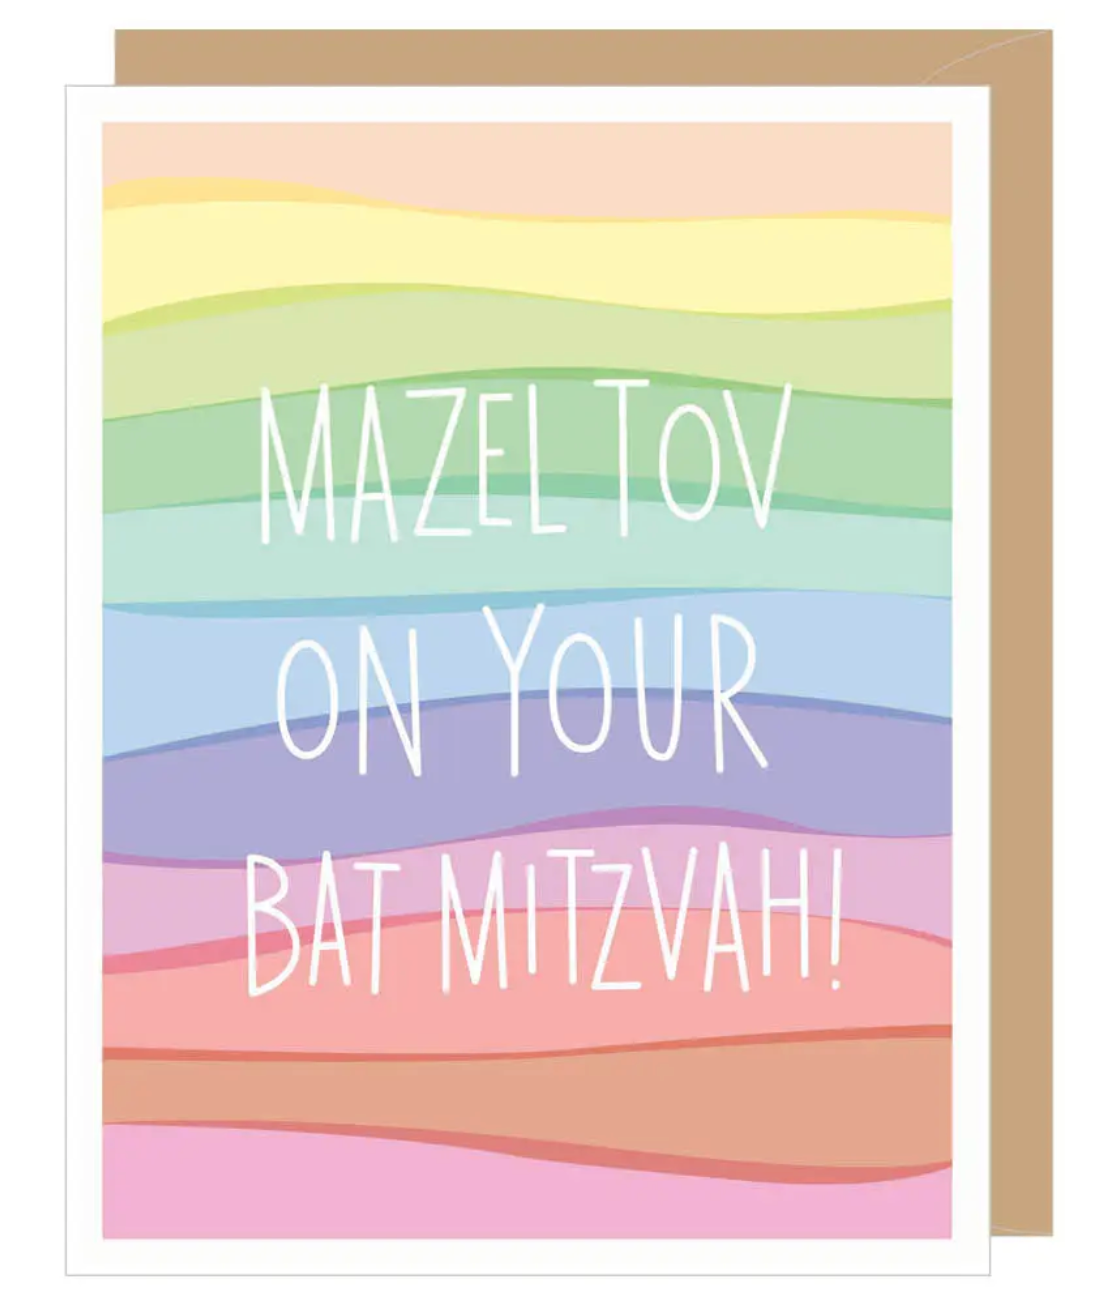 Bat Mitzvah Mazel Tov Card